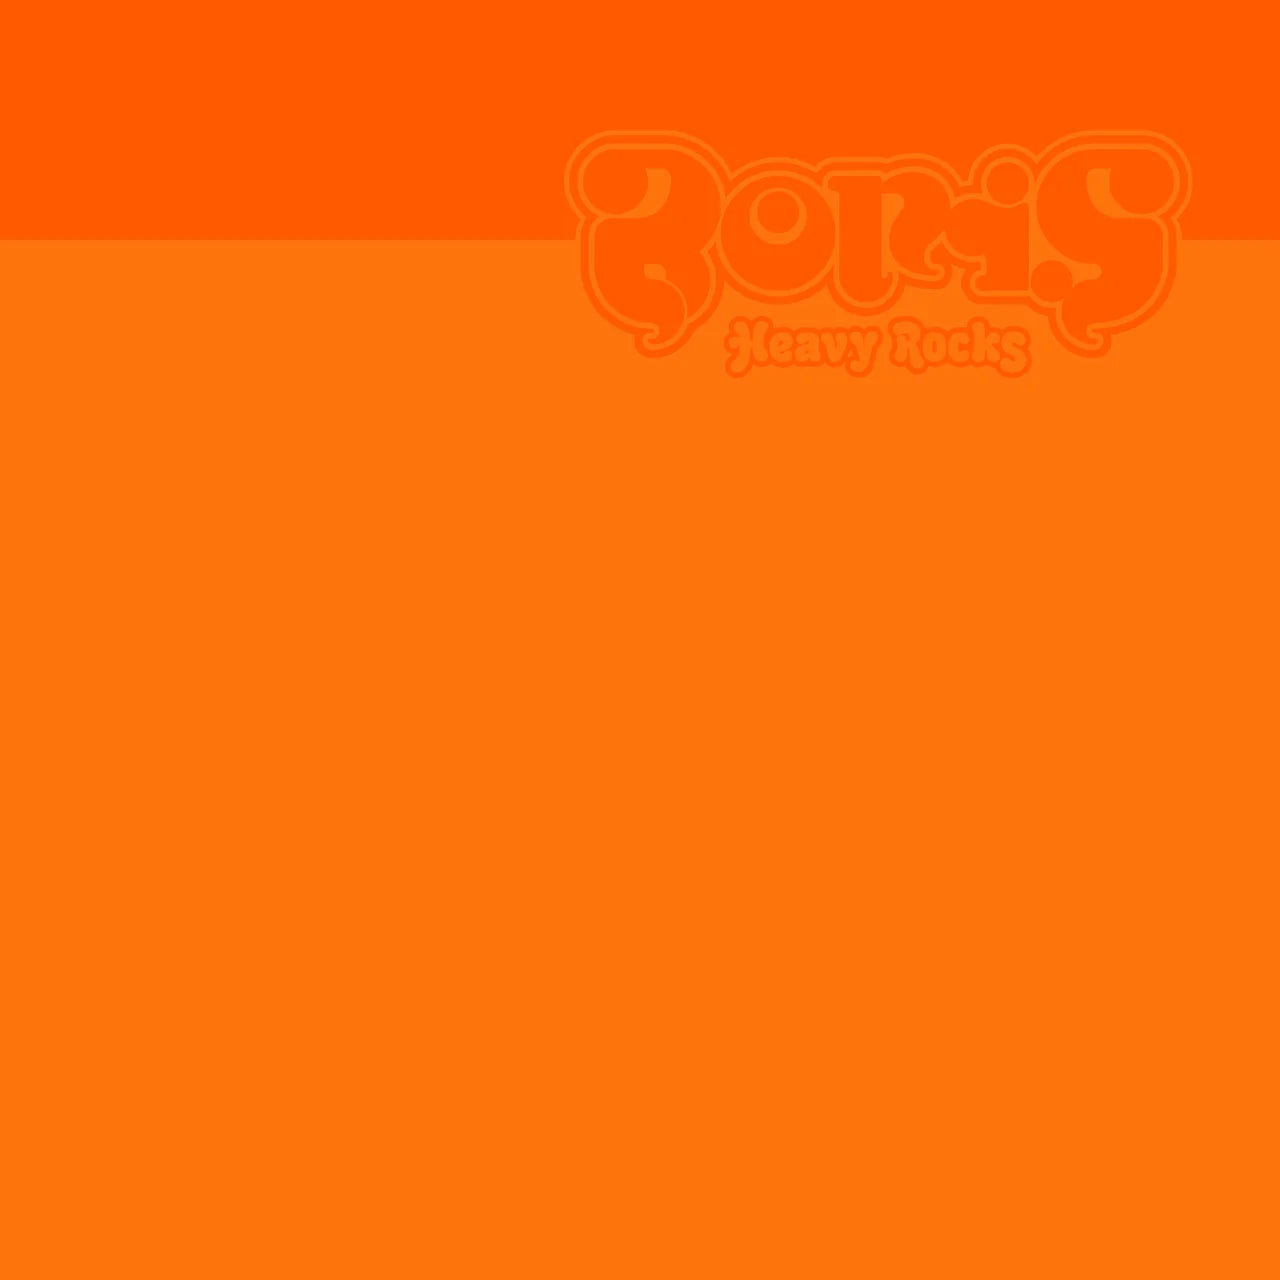 BORIS - HEAVY ROCKS (2002) Vinyl LP